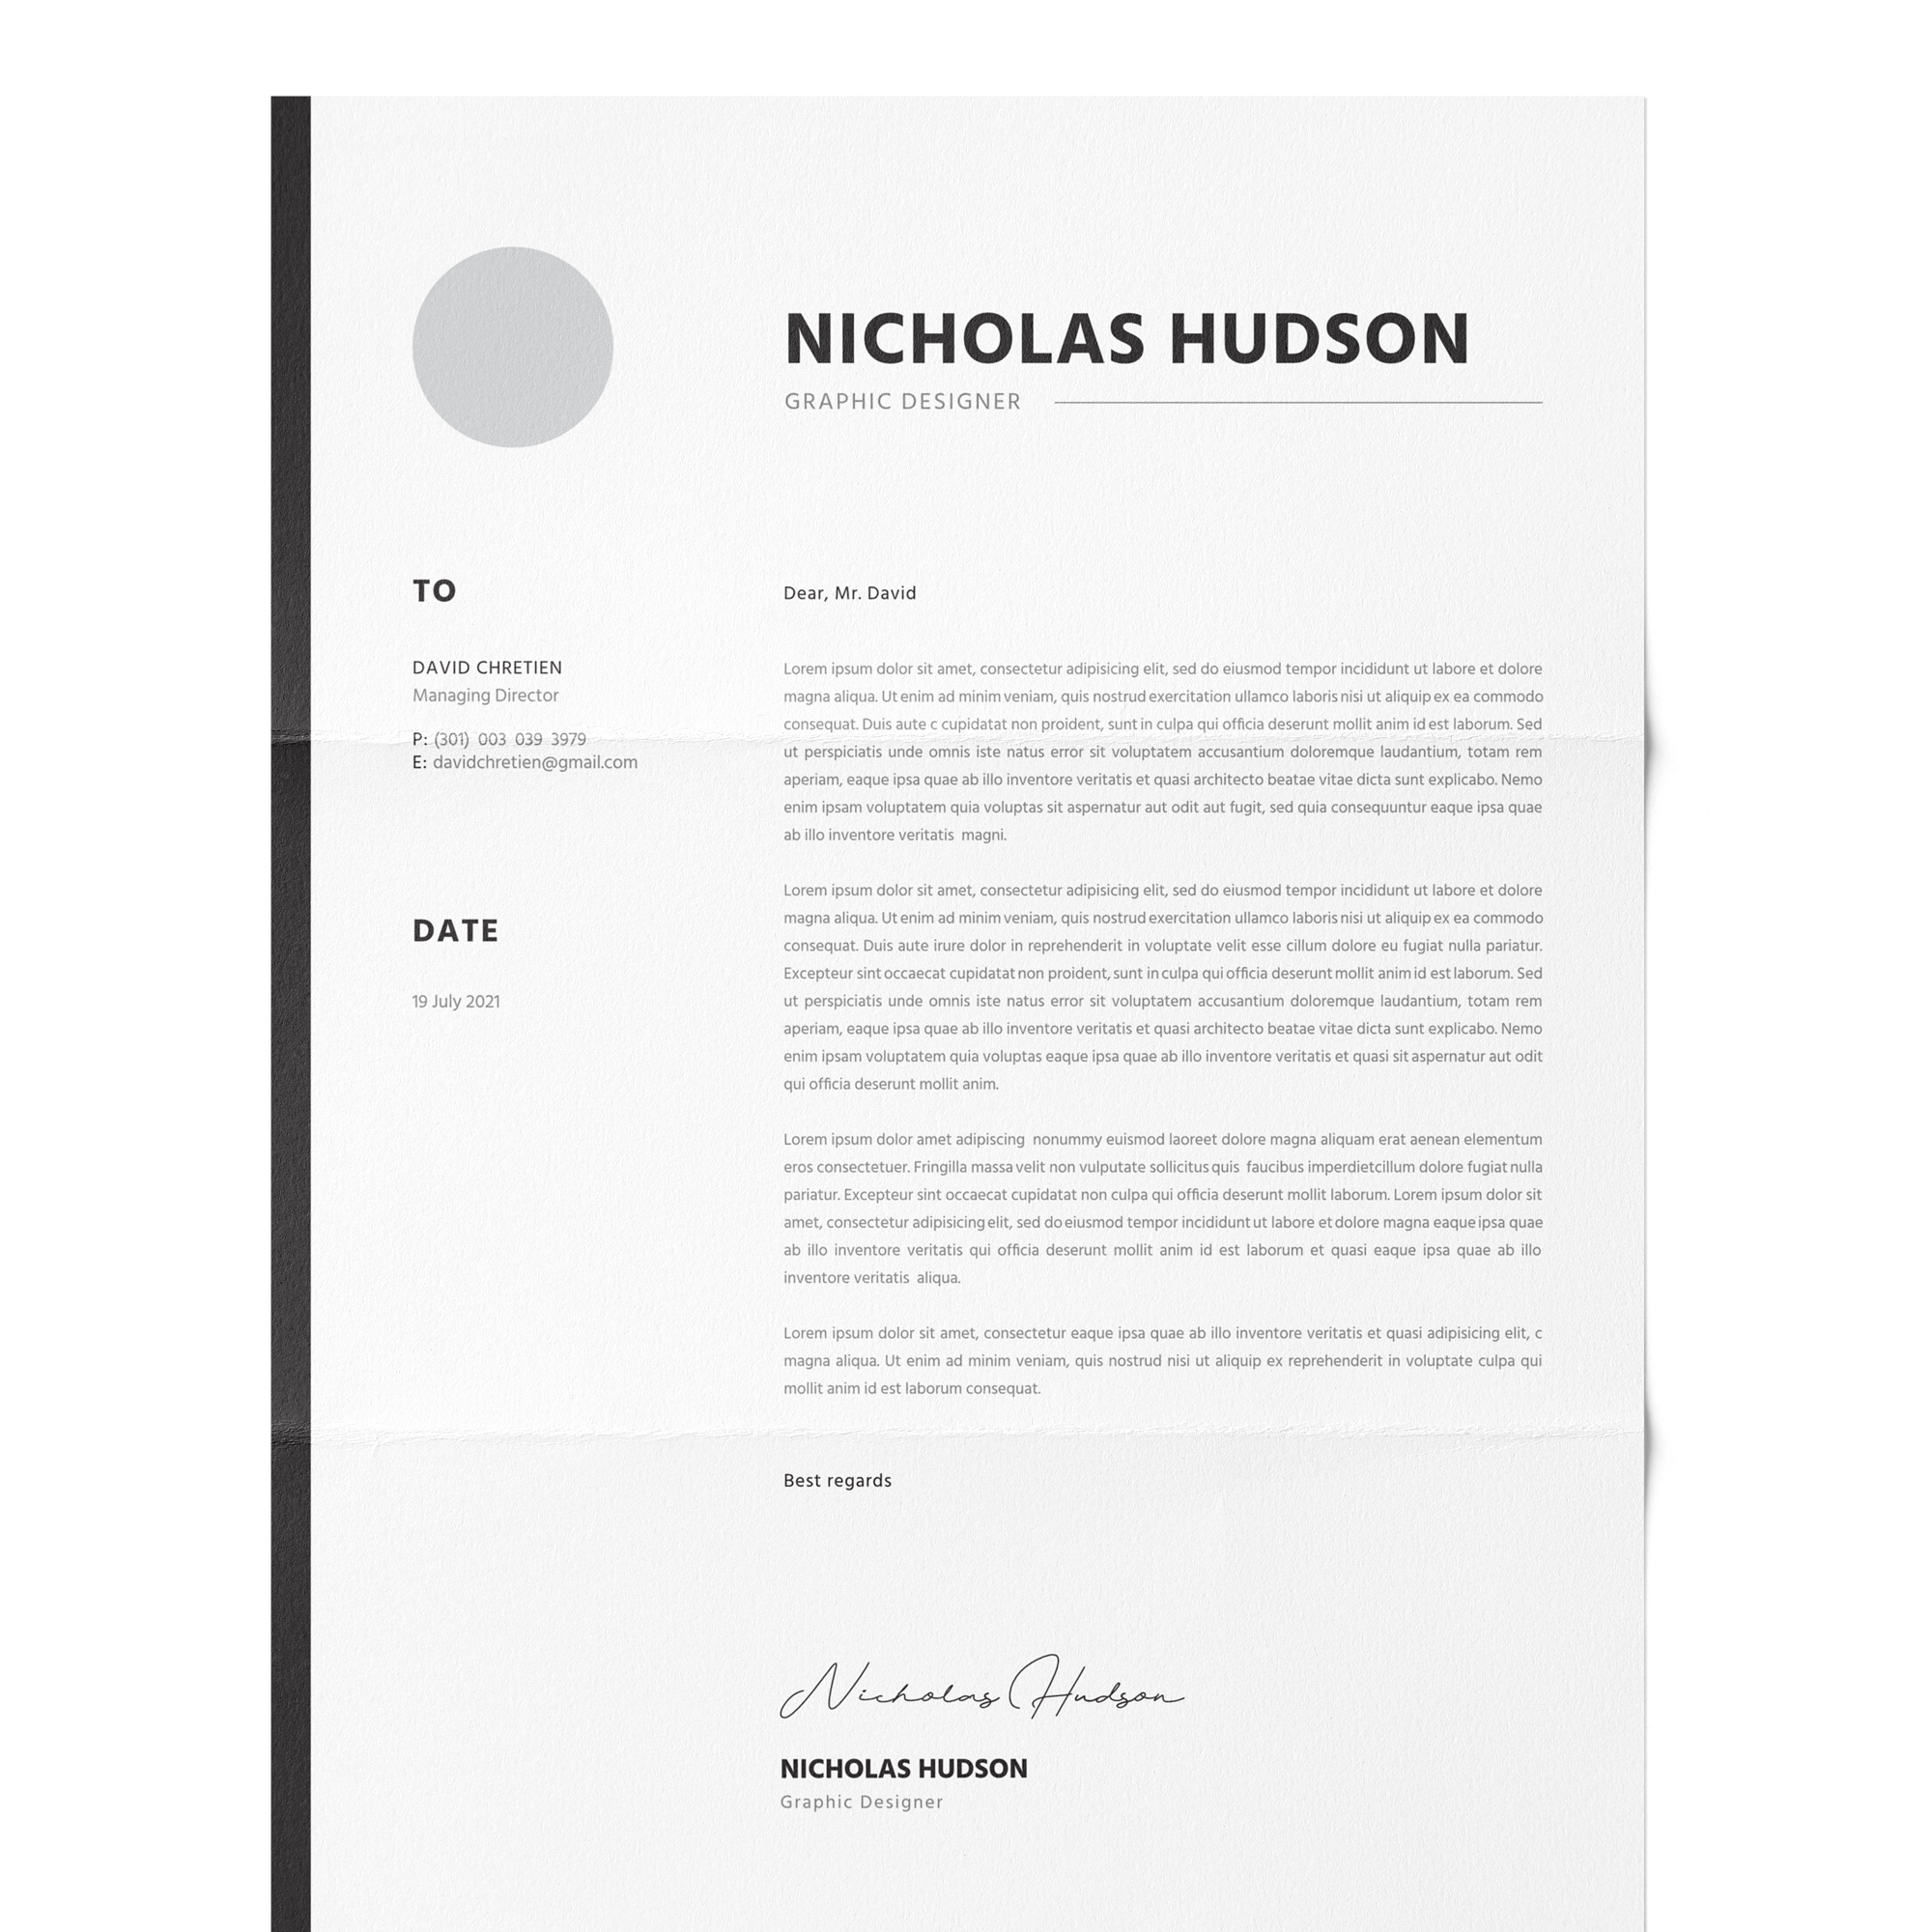 CV #85 Nicholas Hudson